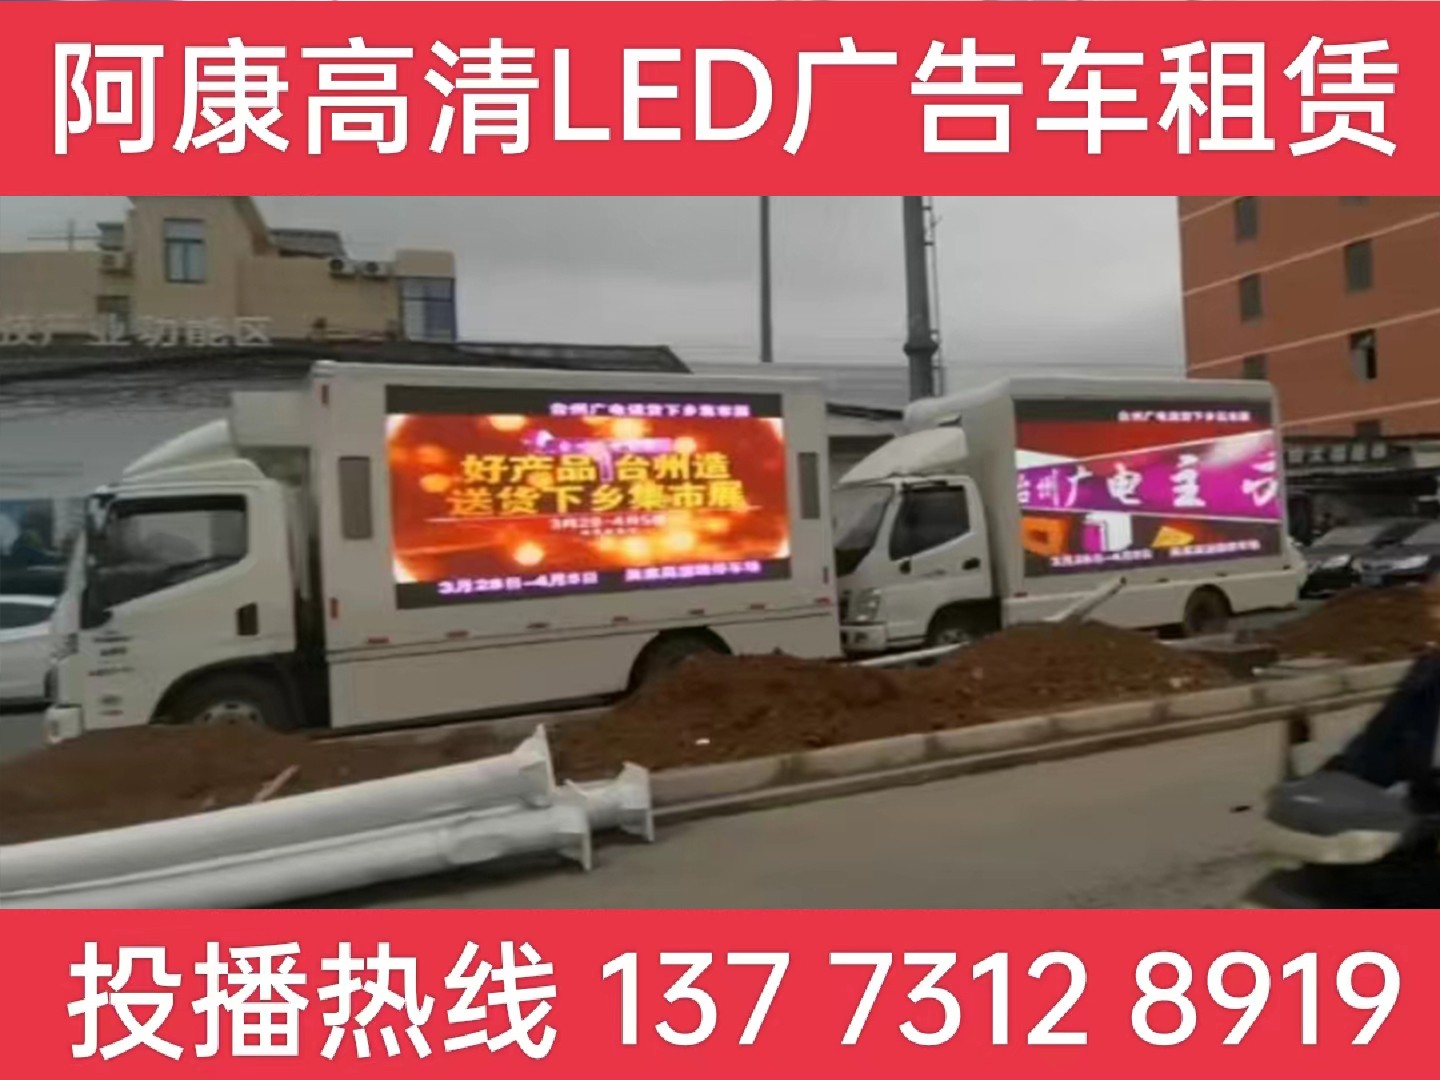 六合区LED宣传车租赁